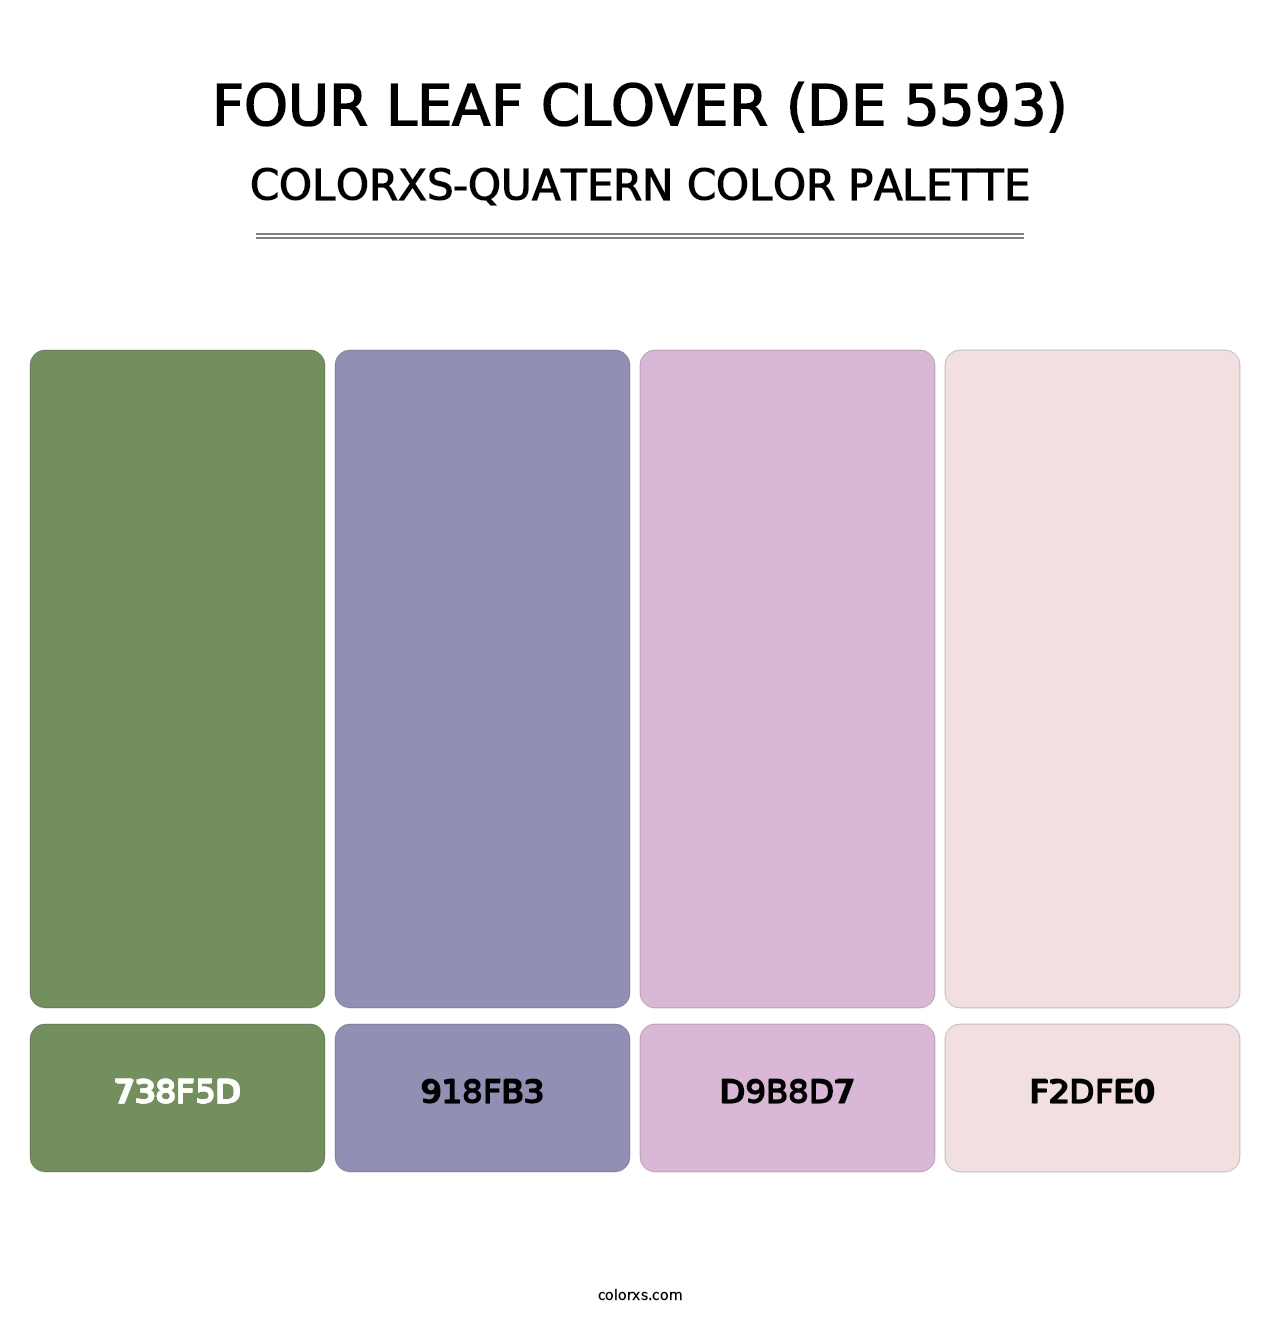 Four Leaf Clover (DE 5593) - Colorxs Quatern Palette